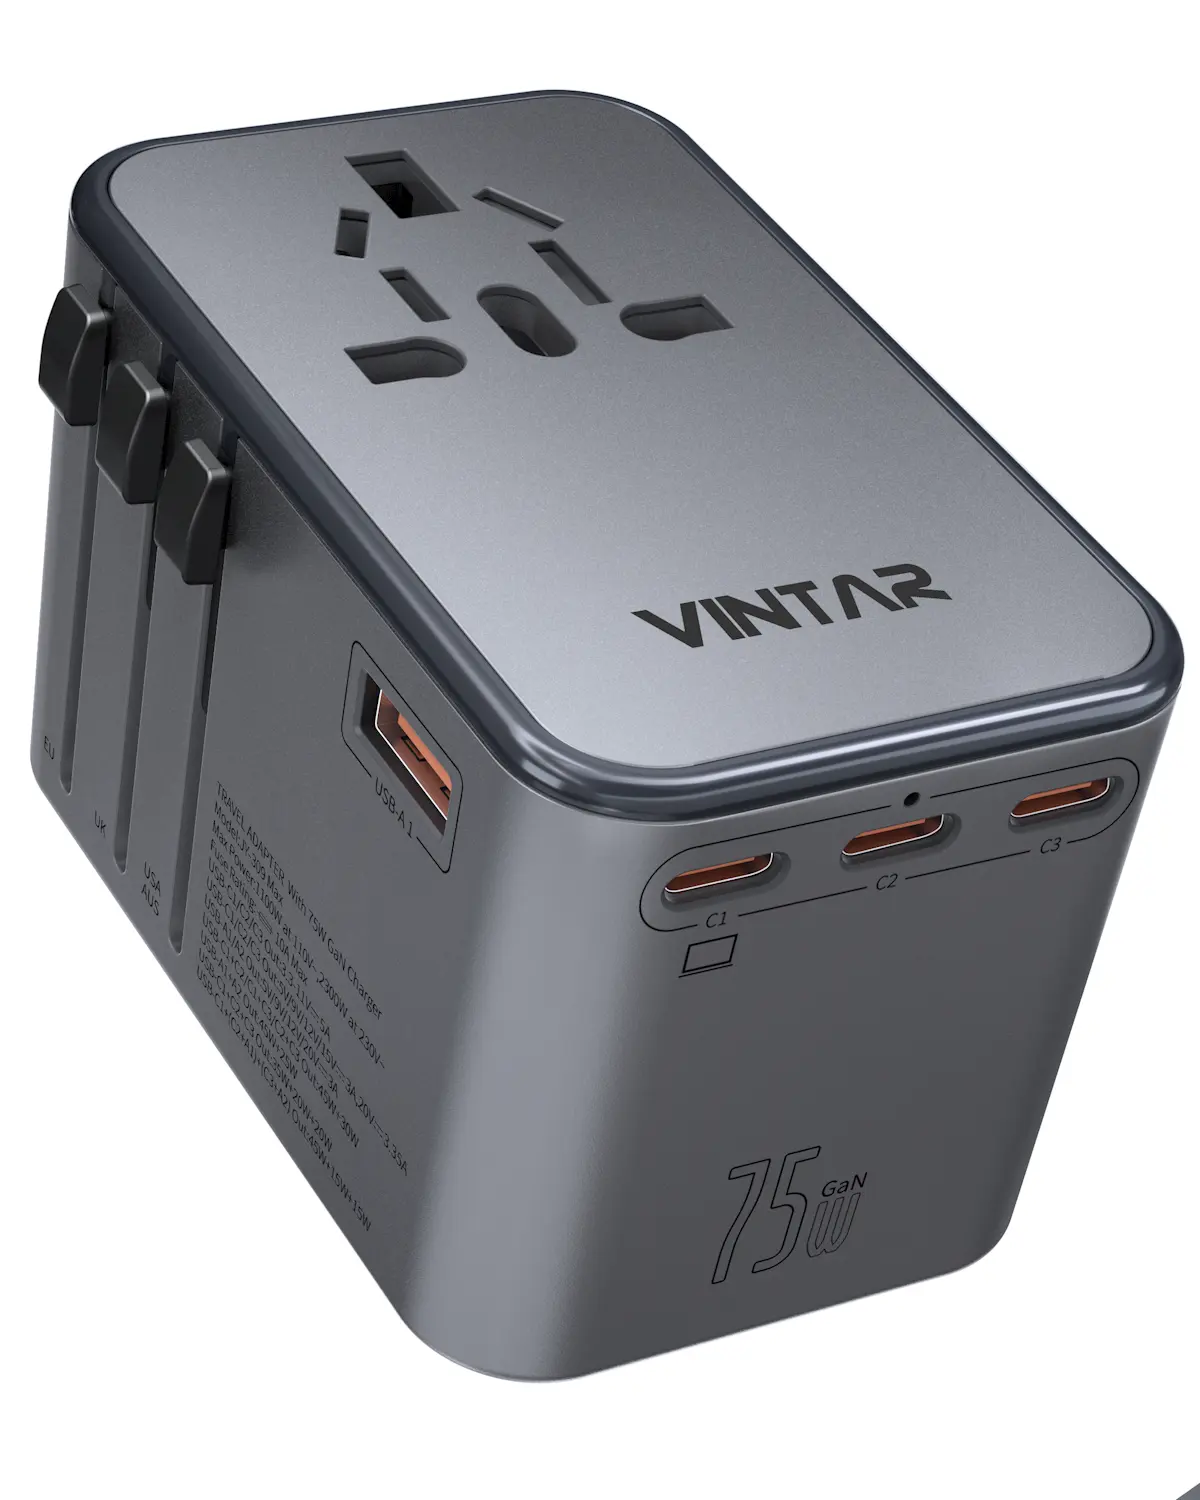 VINTAR GAN 75W USB adaptateur de chargeur tout en un pour les prises de chargeur de voyage universelles avec prise EU US UK AU